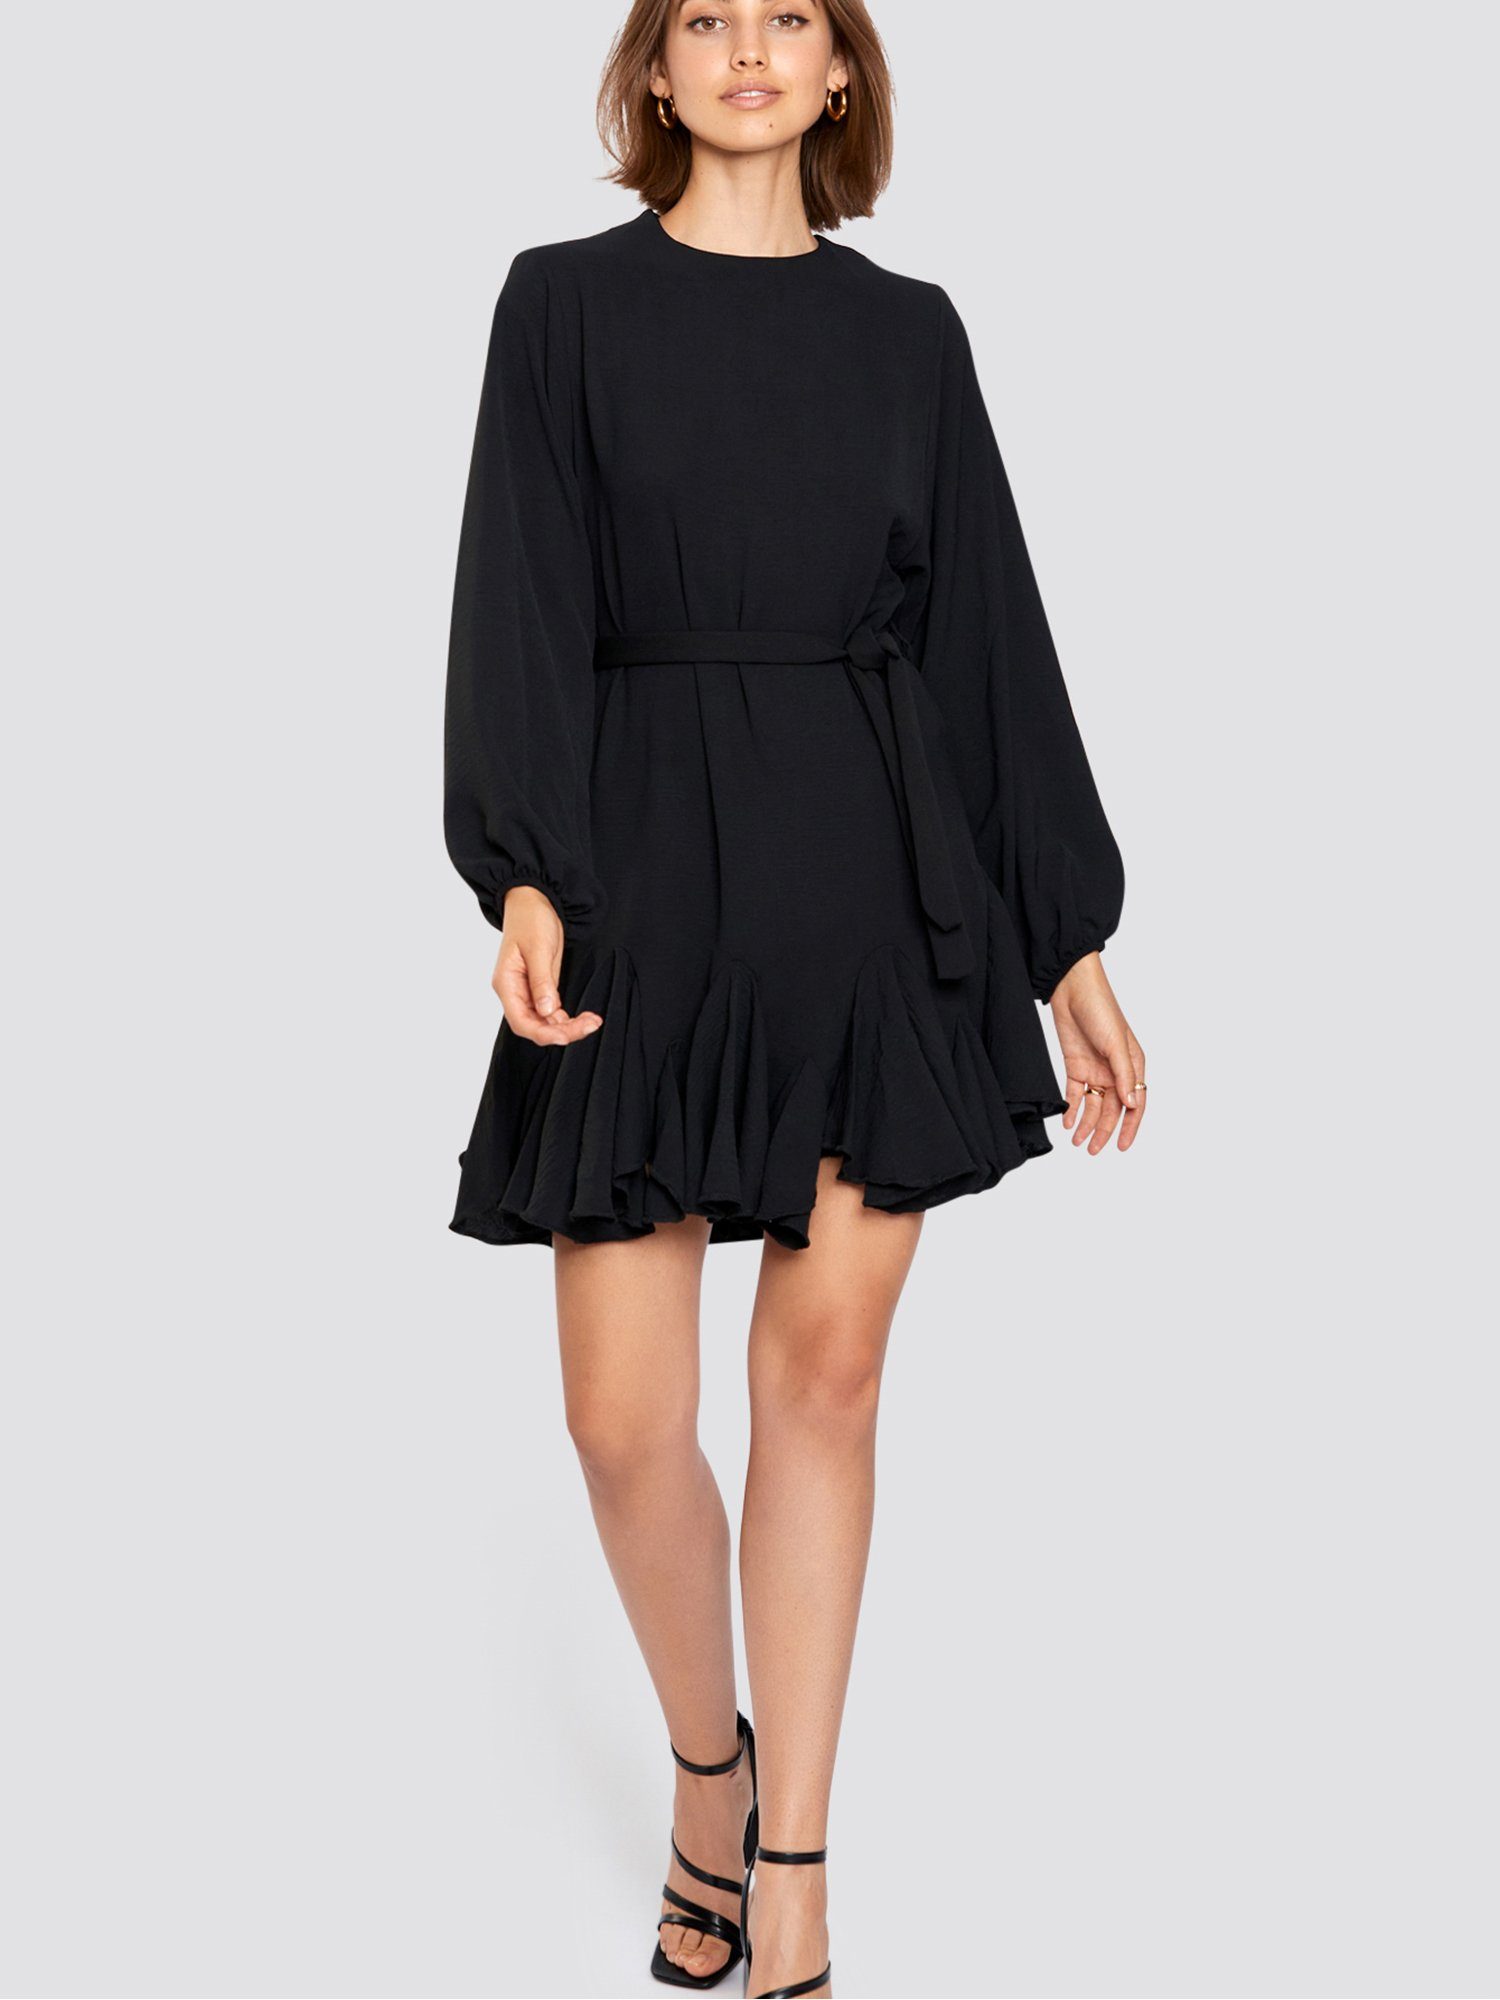 Freshlions Minikleid Kleid mit Bindegurt Rüschen, Taillentunnelzug schwarz